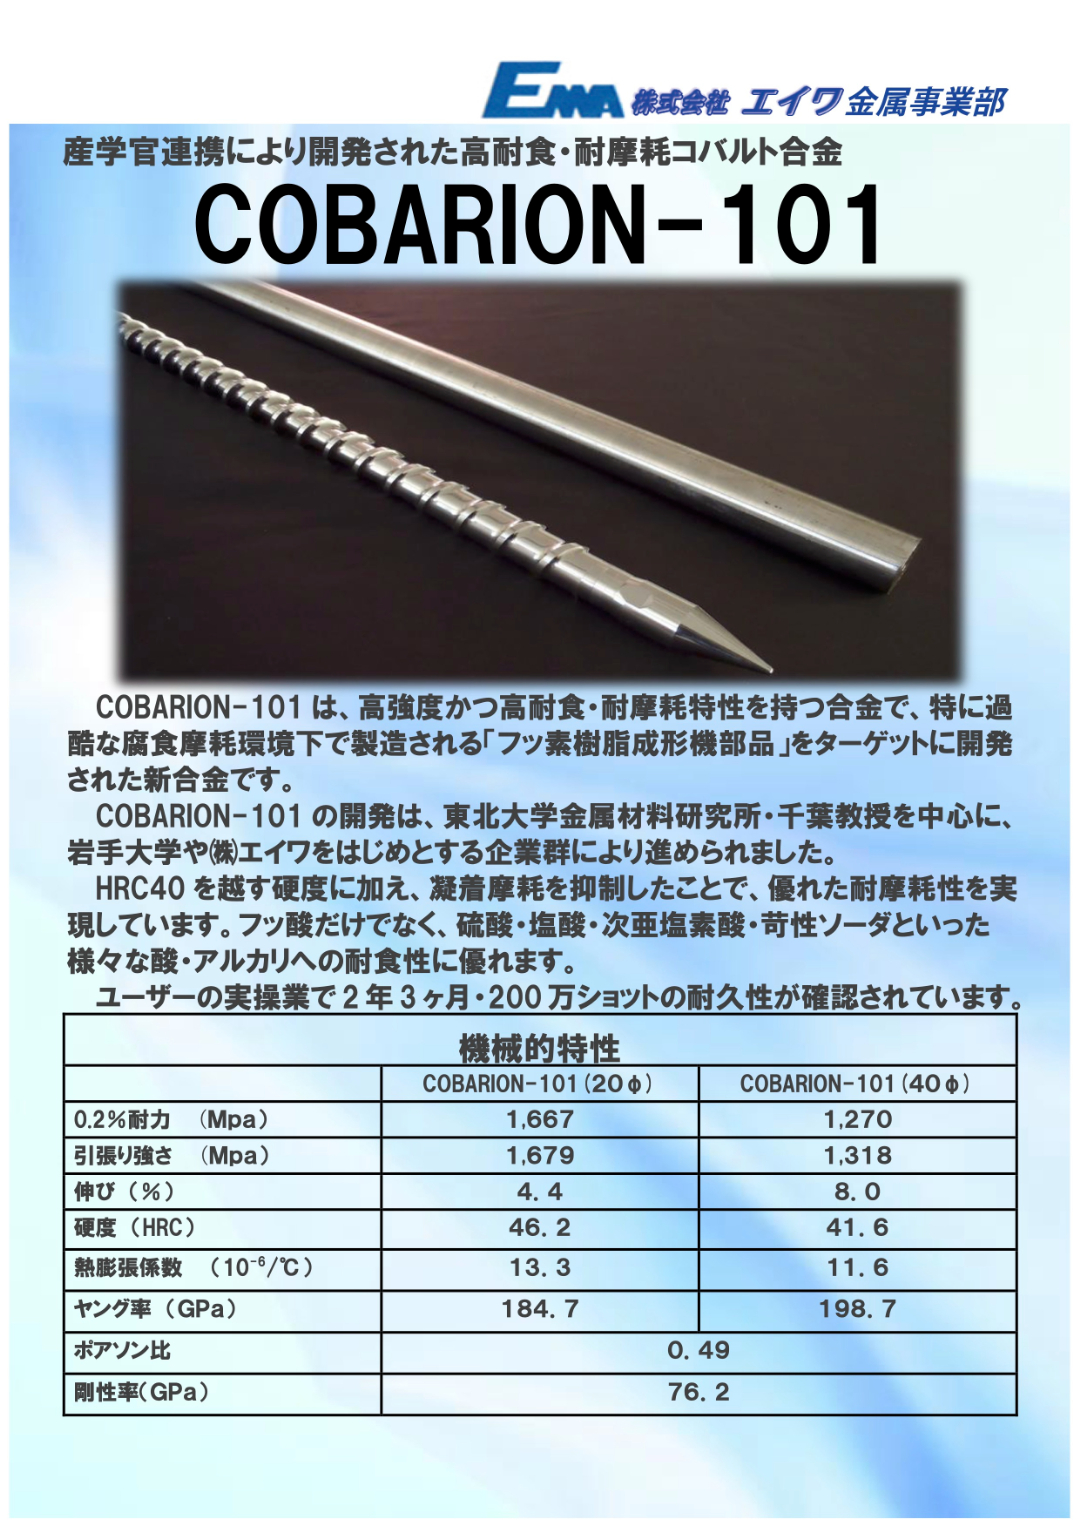 産学官連携により開発された高耐食・耐摩耗コバルト合金「COBARION-101」